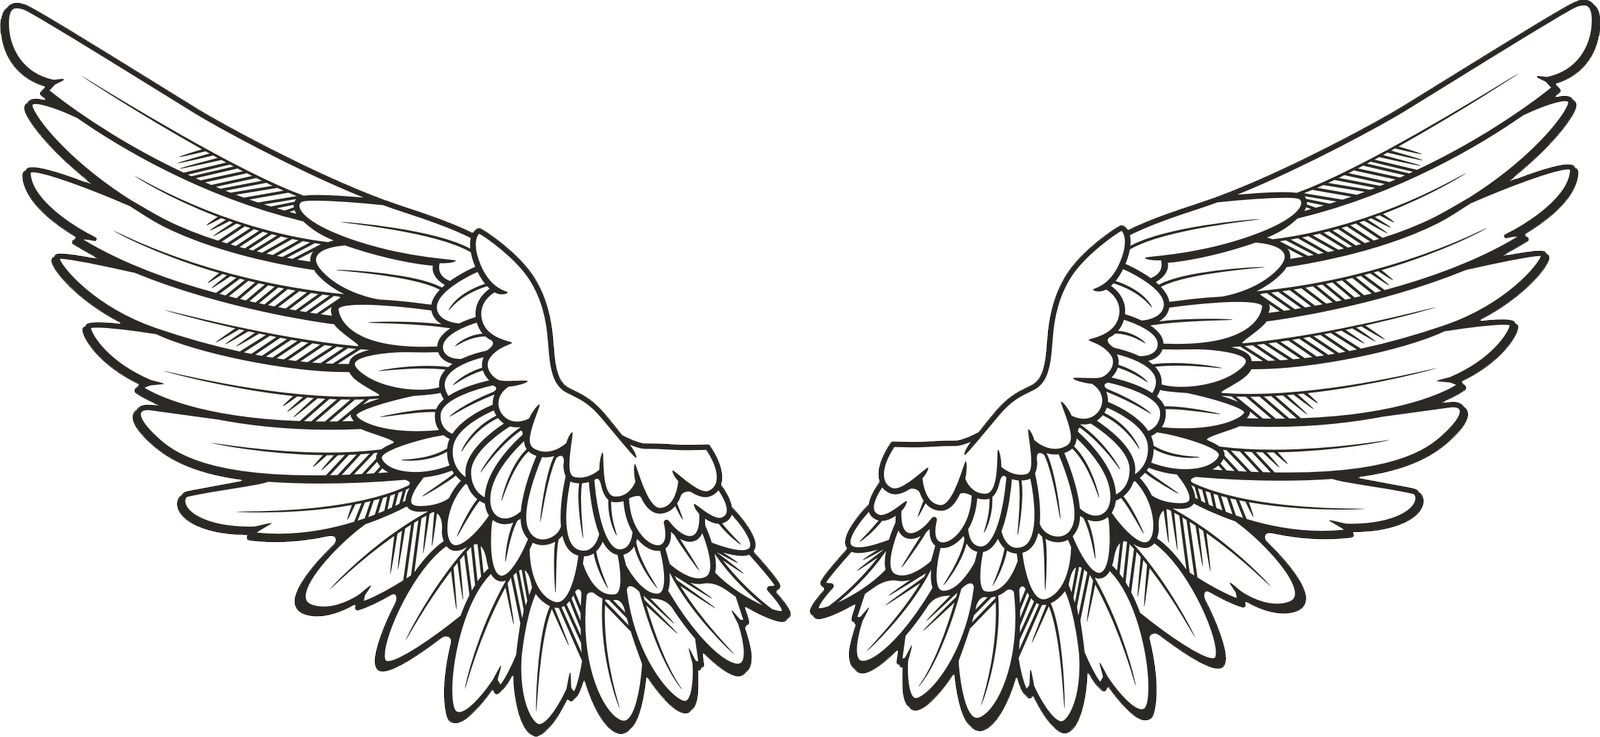 Black Wings PNG Image  Angel wings png, Wings drawing, Wings png